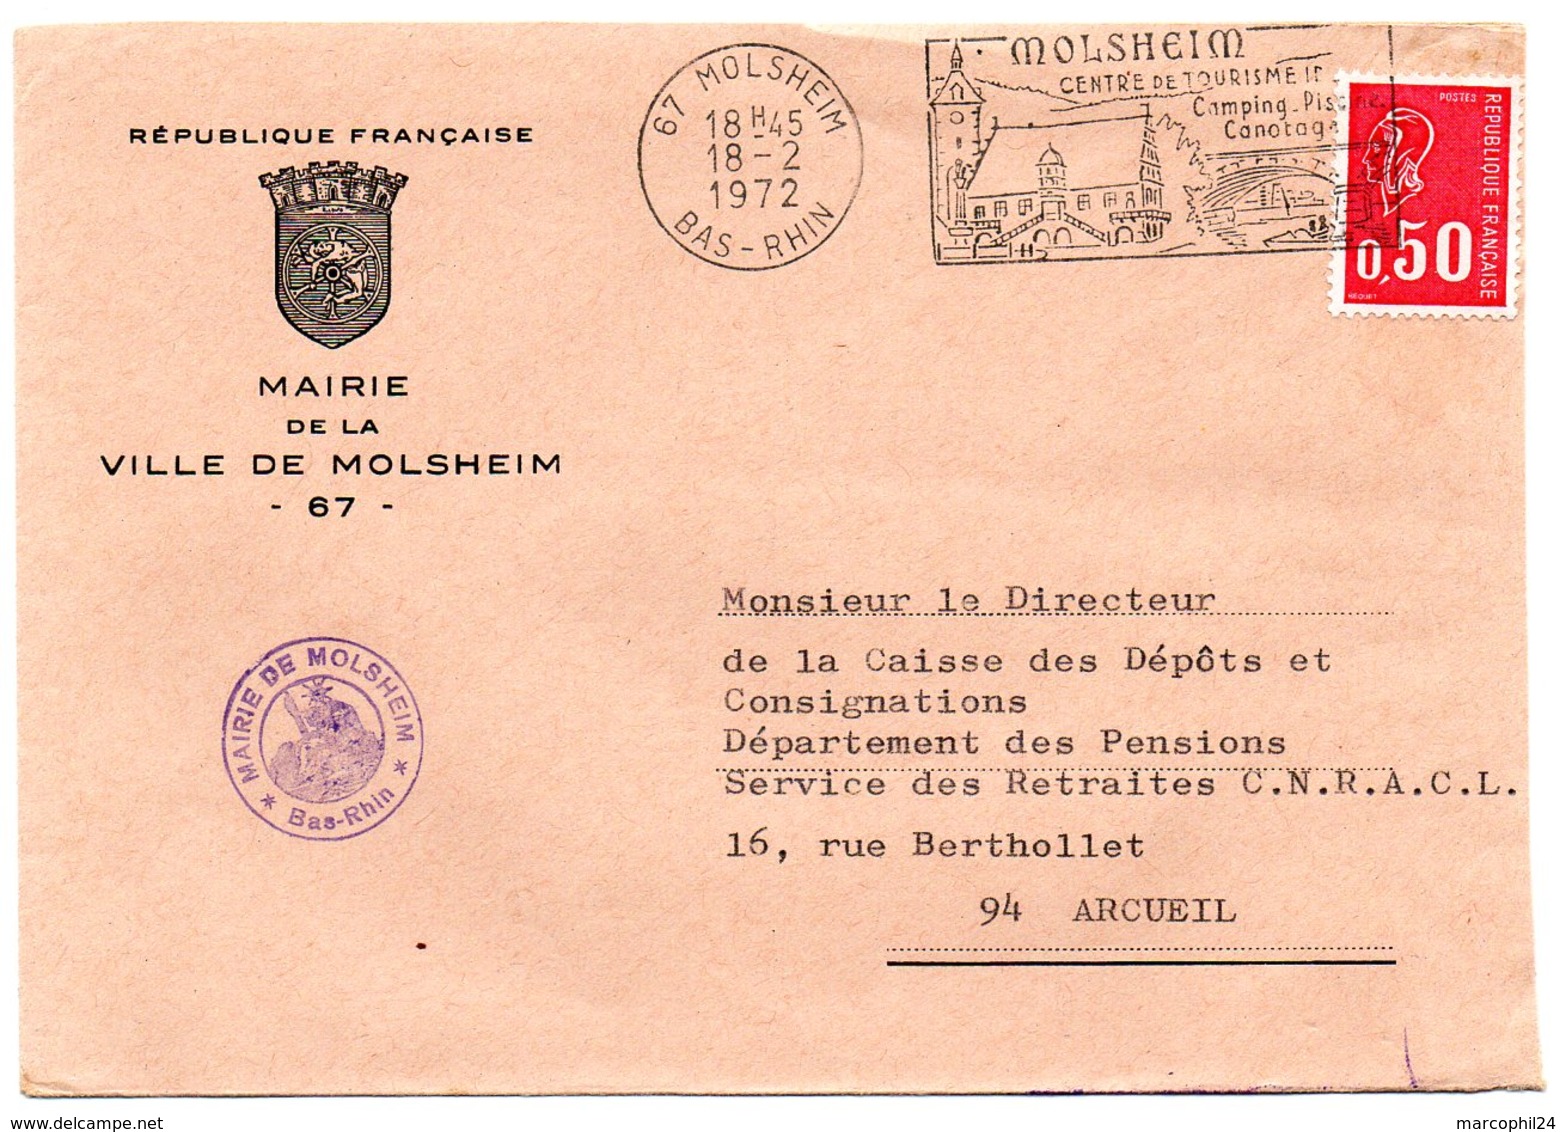 RHIN / Bas - Dépt N° 67 = MOLSHEIM 1972 = FLAMME à Droite = SECAP Illustrée ' CENTRE De TOURISME IDEAL ' + MAIRIE - Mechanical Postmarks (Advertisement)